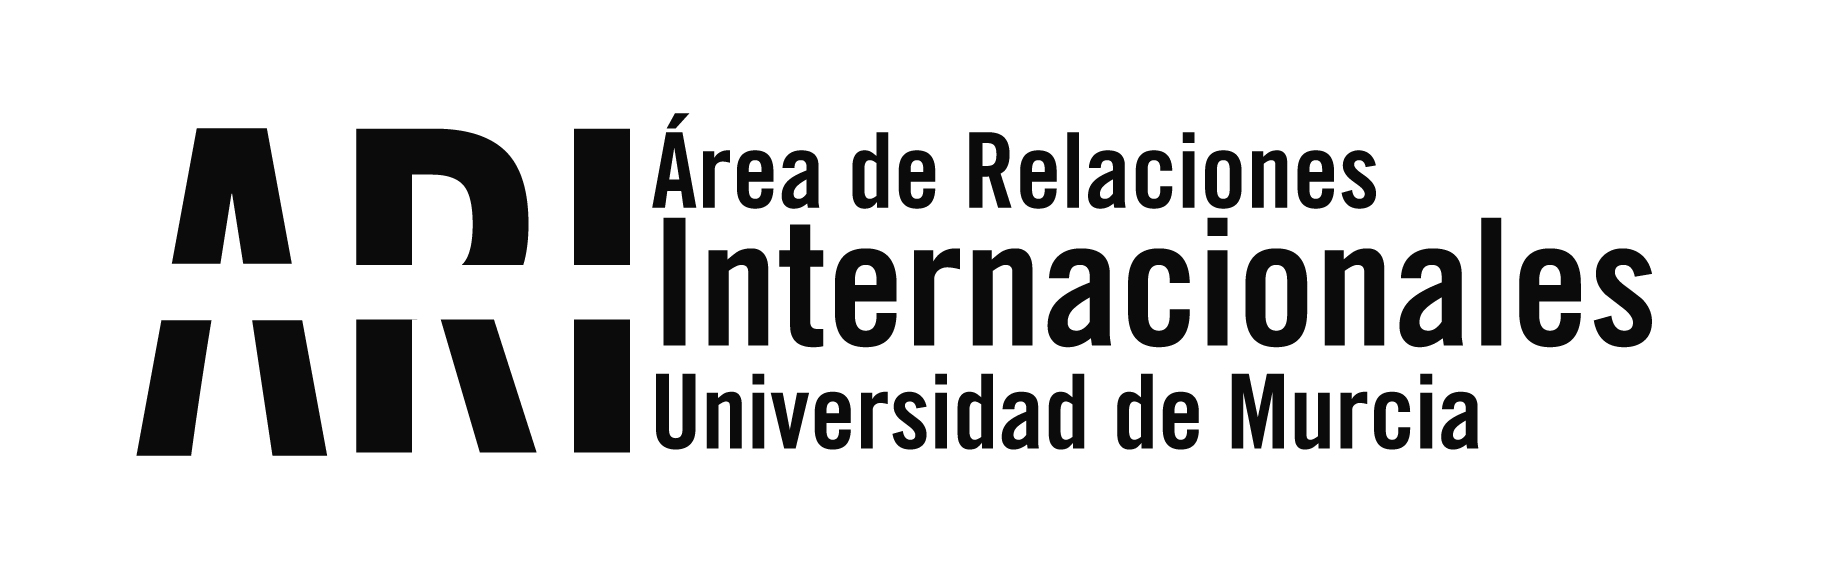 La Universidad de Murcia seleccionada para participar en un proyecto interuniversitario sobre refugio y ODS coordinado por el Comité Español de ACNUR - Área de Relaciones Internacionales